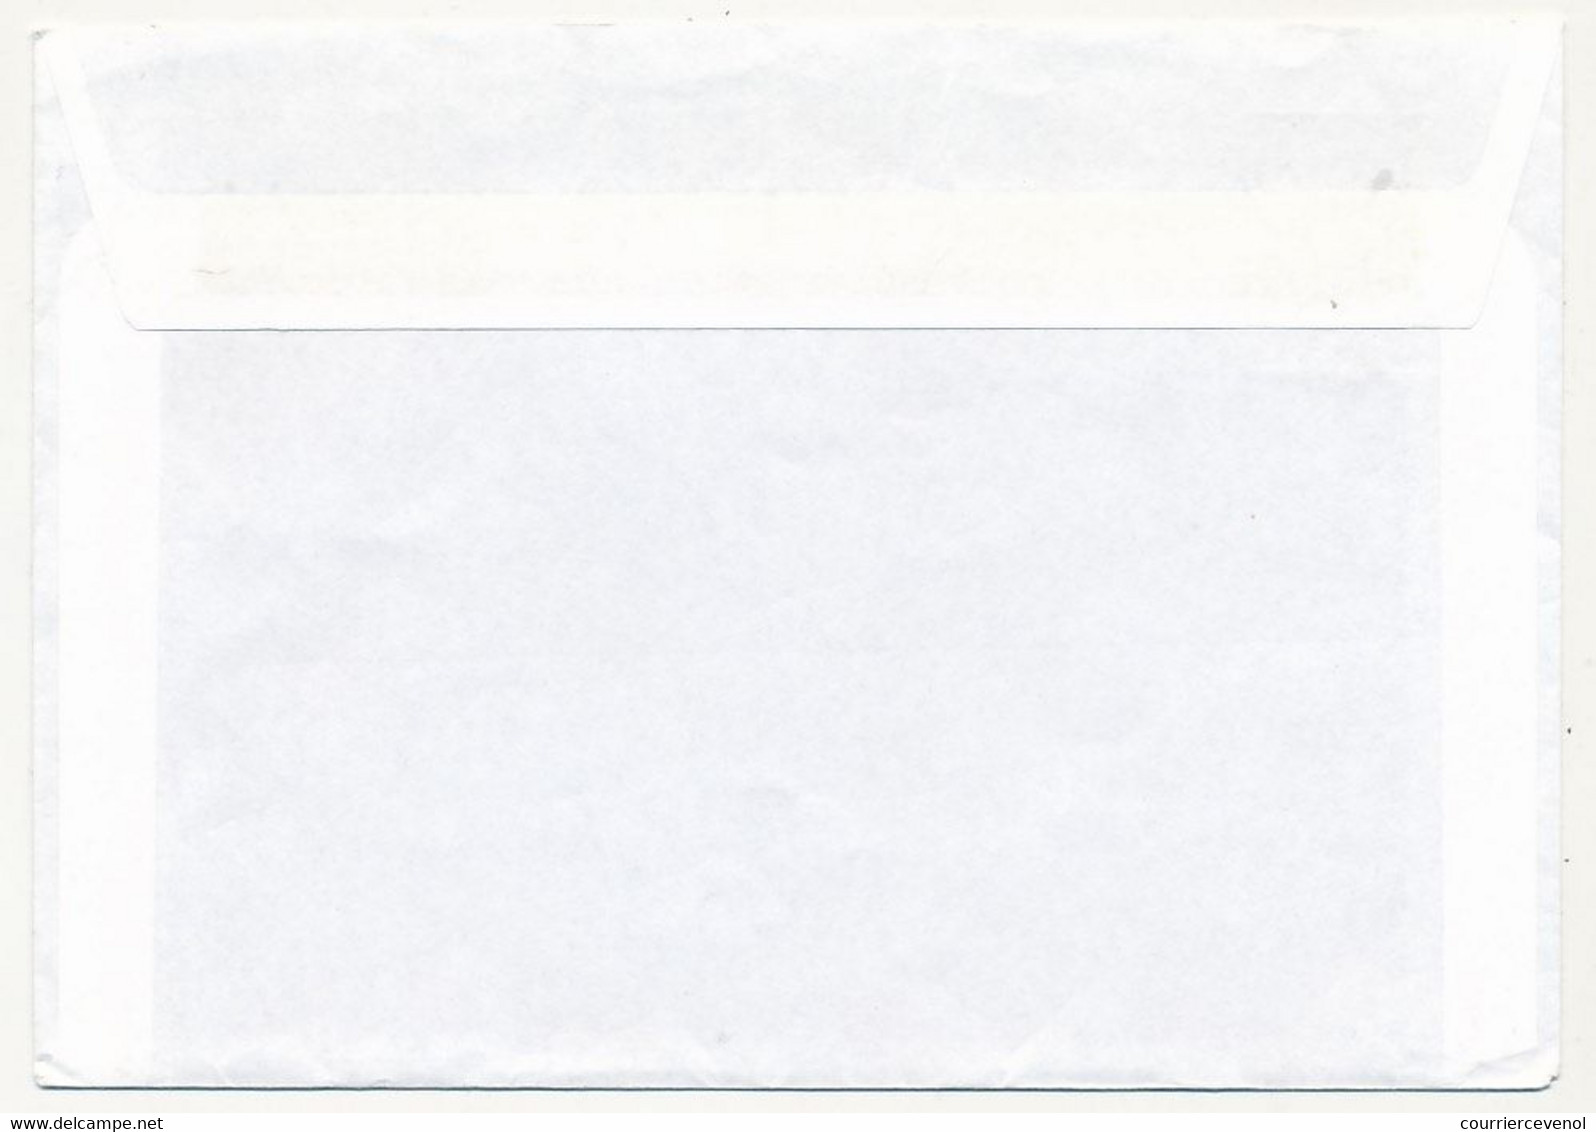 FRANCE => Enveloppe FORPRONU 403° B.S.L. - Cachet United Nation Protection Force 27 Sept 1993 (Zagreb) - Militaire Stempels Vanaf 1900 (buiten De Oorlog)